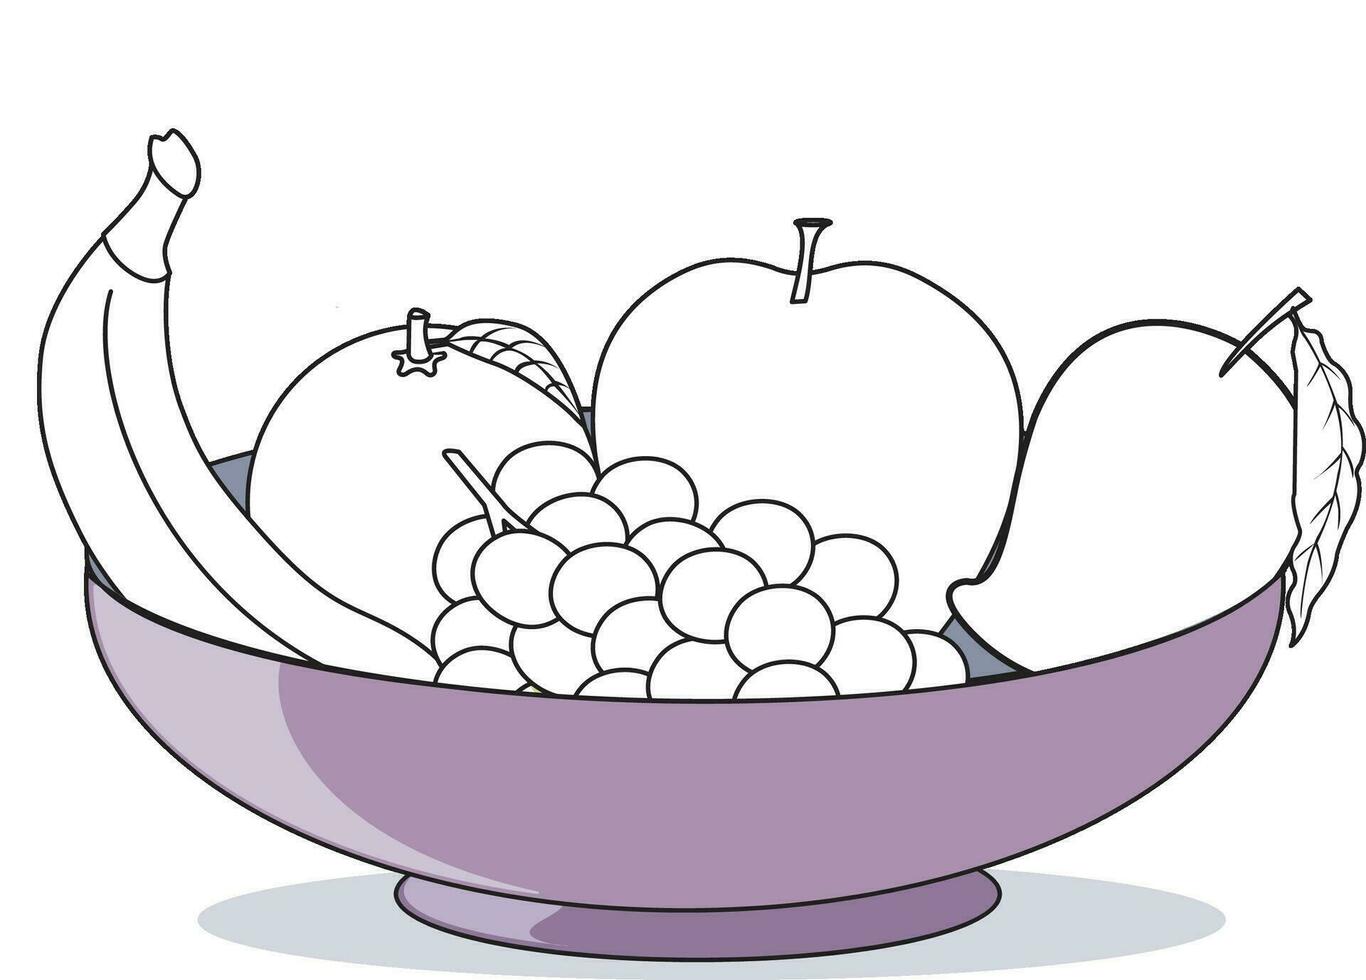 vector ilustración demostración contornos de banana, manzana, mango, uvas y naranja metido en un cesta